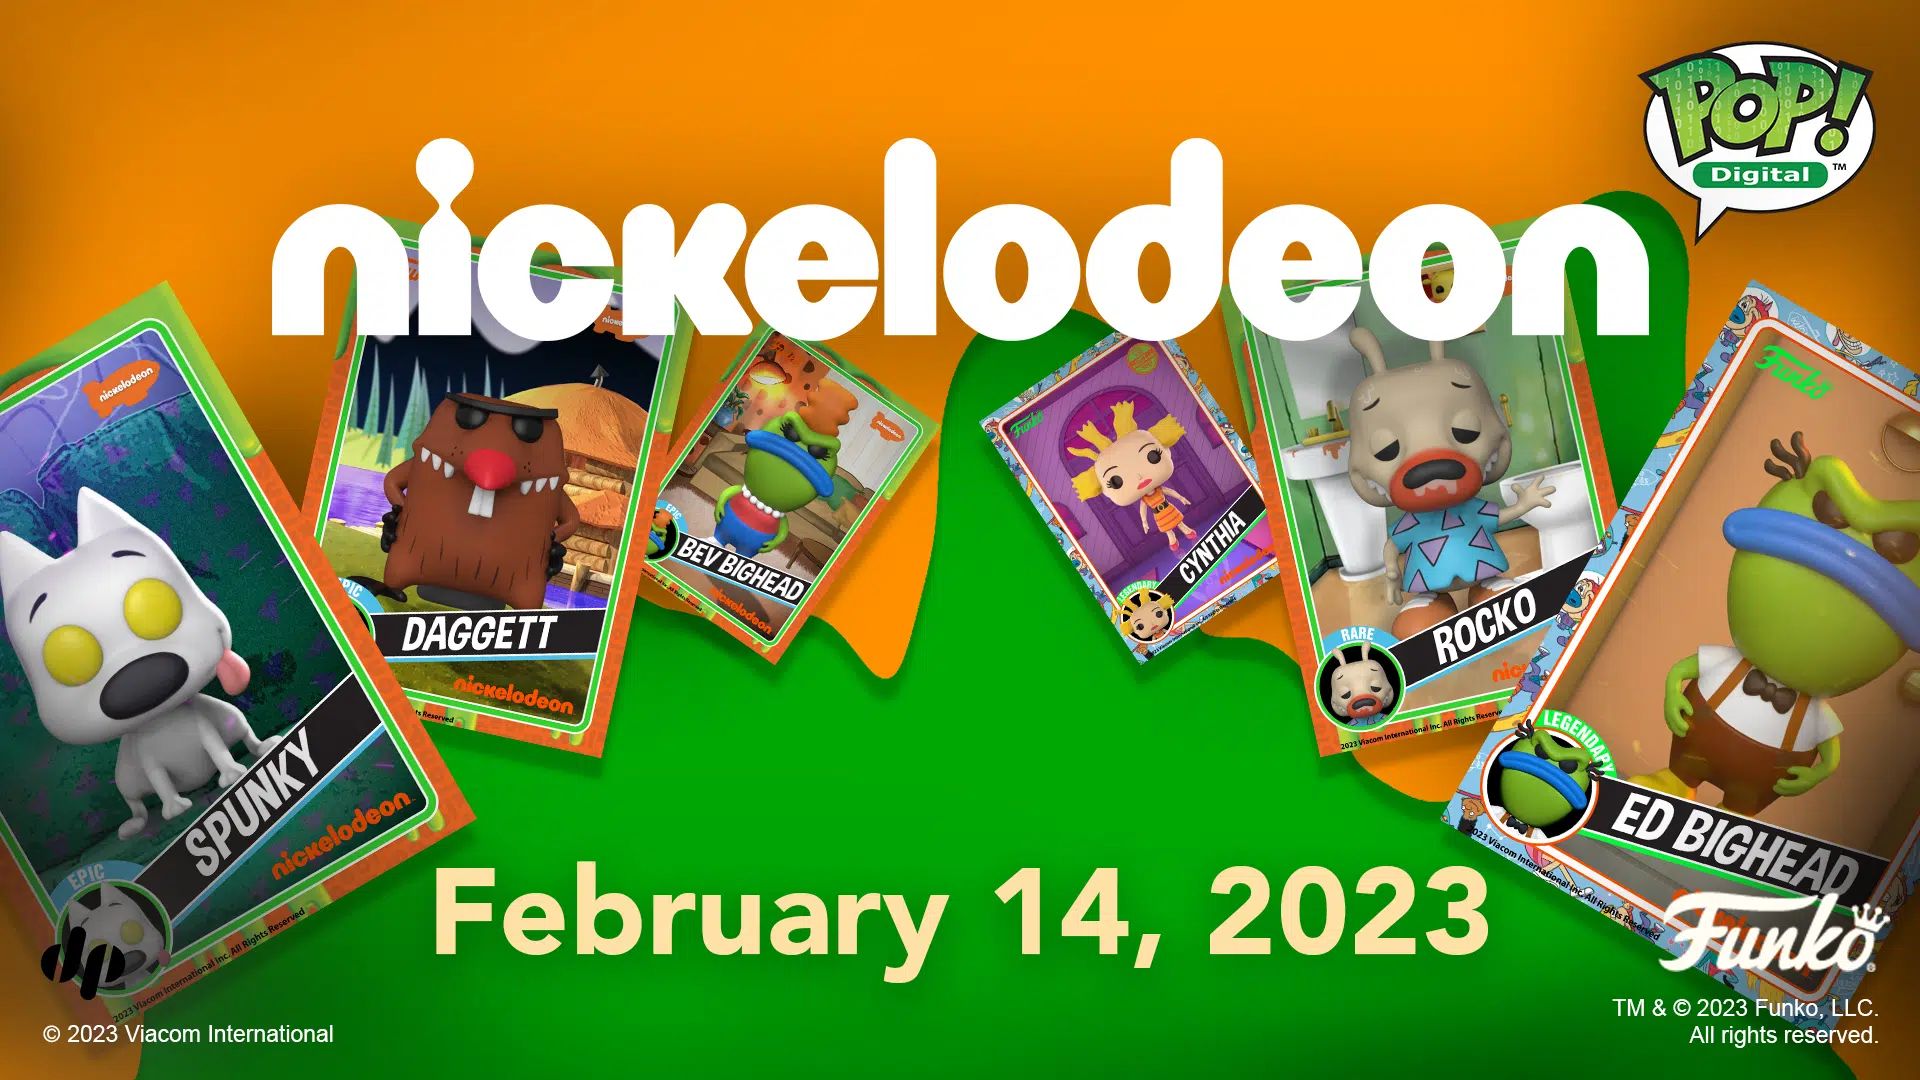 Η Funko και η Paramount παρουσιάζουν νέα συλλεκτικά ψηφιακά ποπ κινούμενα σχέδια Nickelodeon